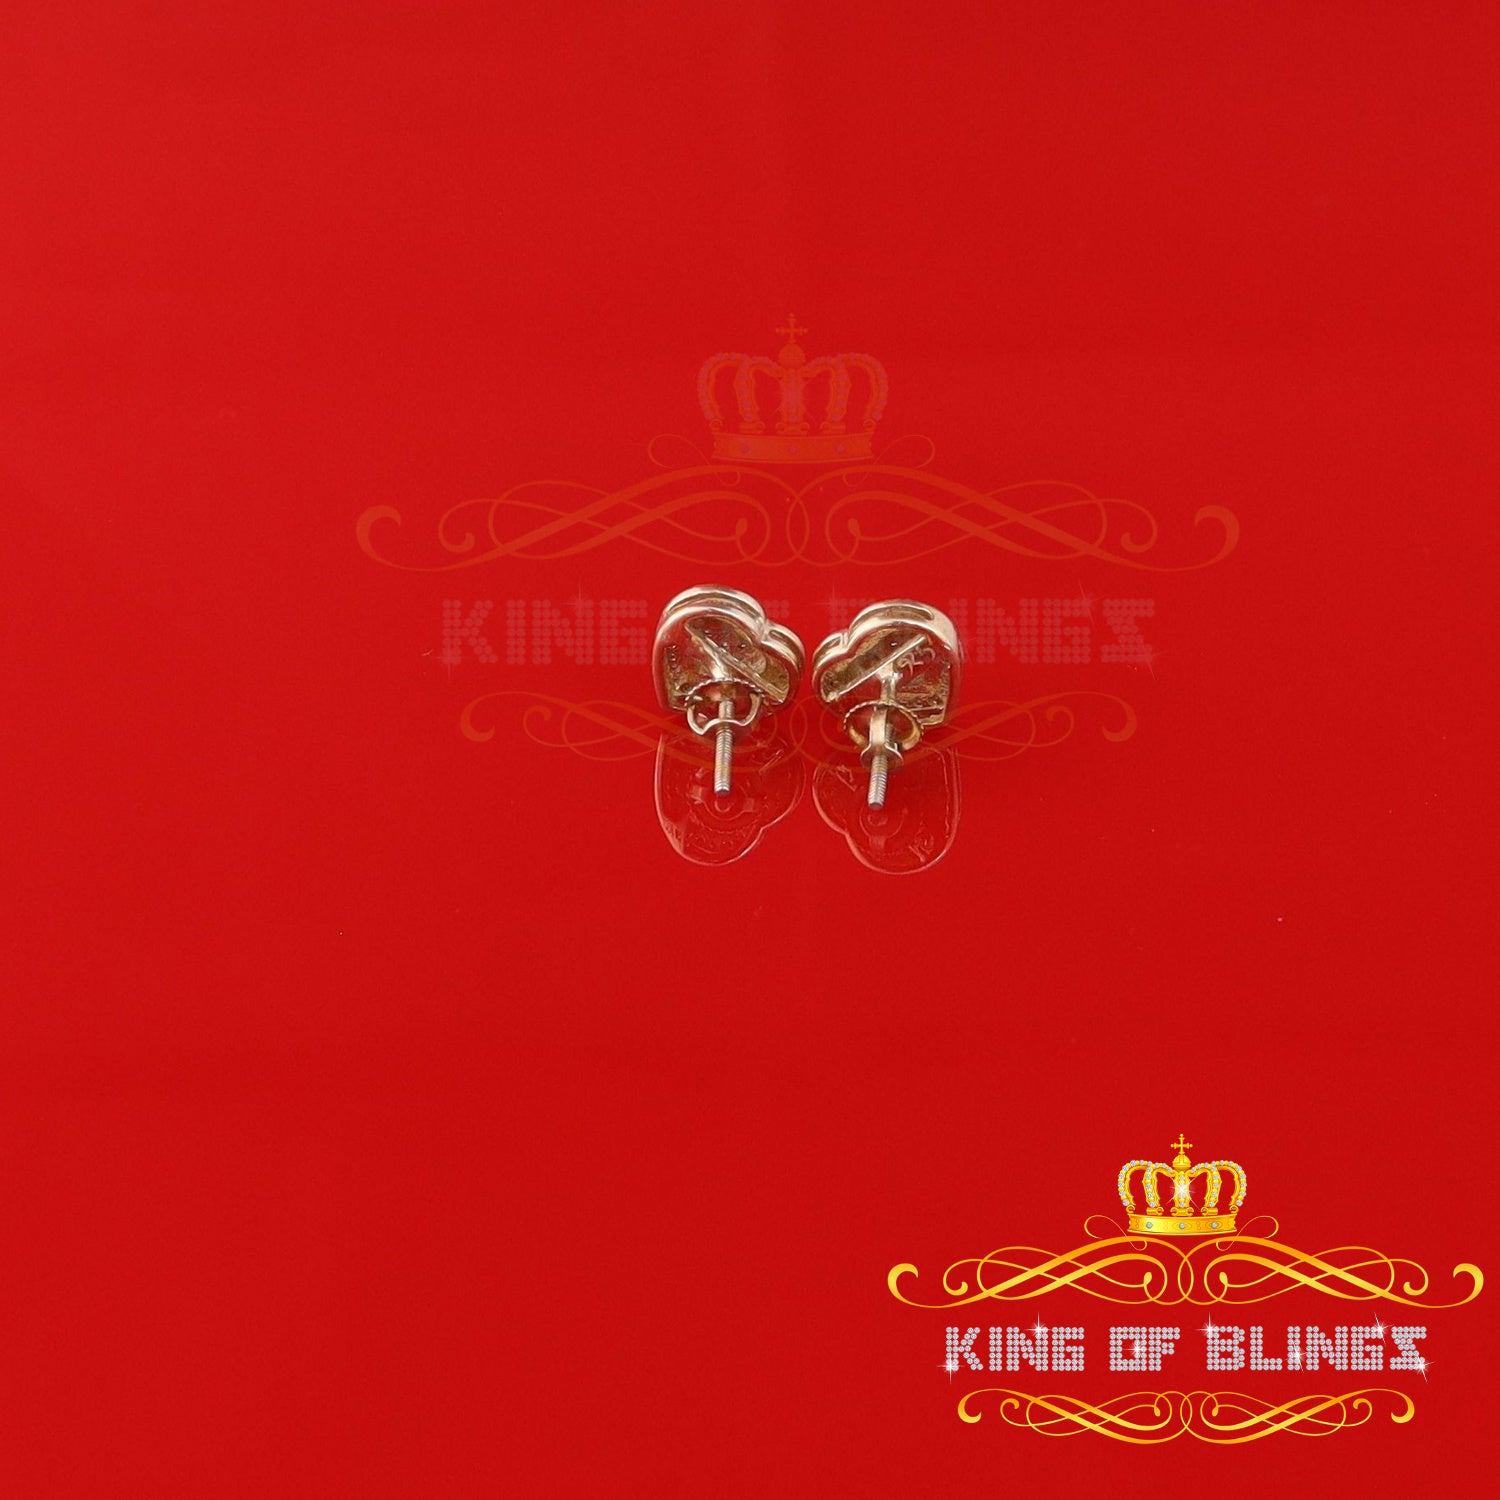 King of Blings-0.10ct Diamond Heart Earring Yellow 925 Sterling Silver Stud For Men's & Women's KING OF BLINGS